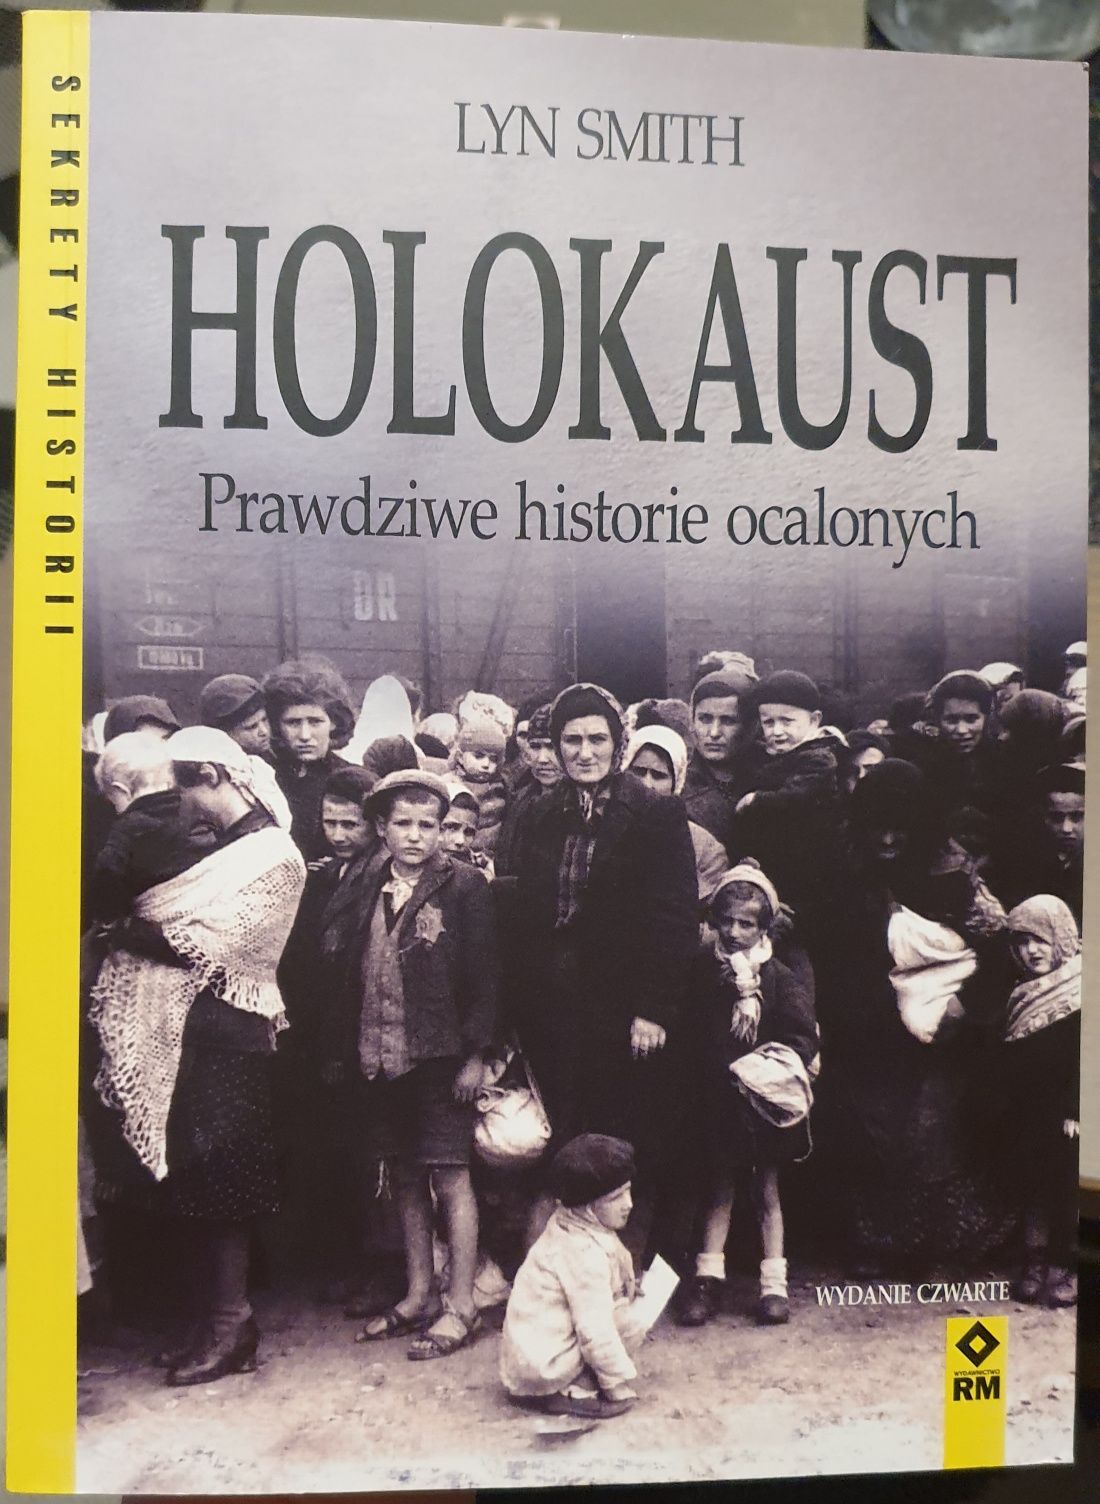 Holokaust - prawdziwe historię ocalonych